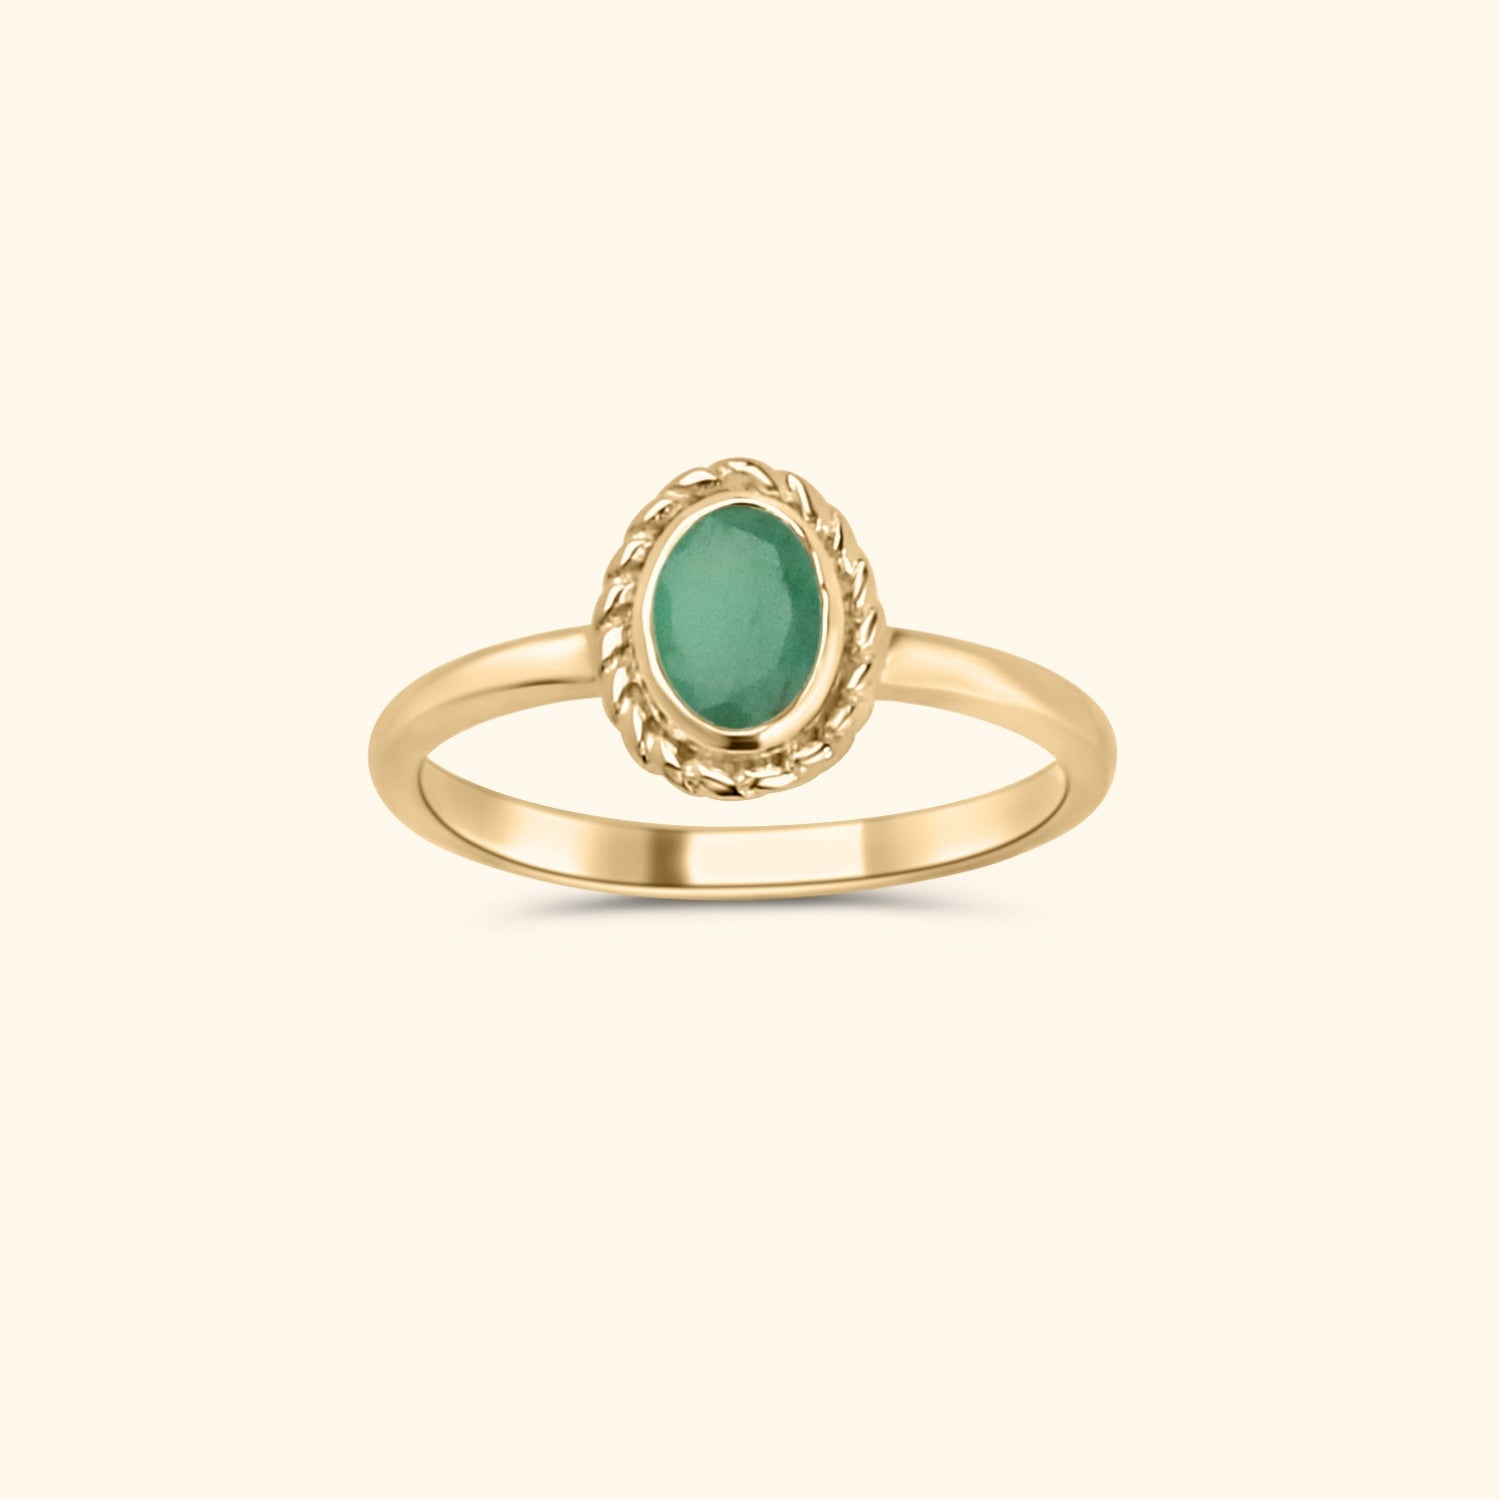 Mai Smaragd - Birthstone Ring